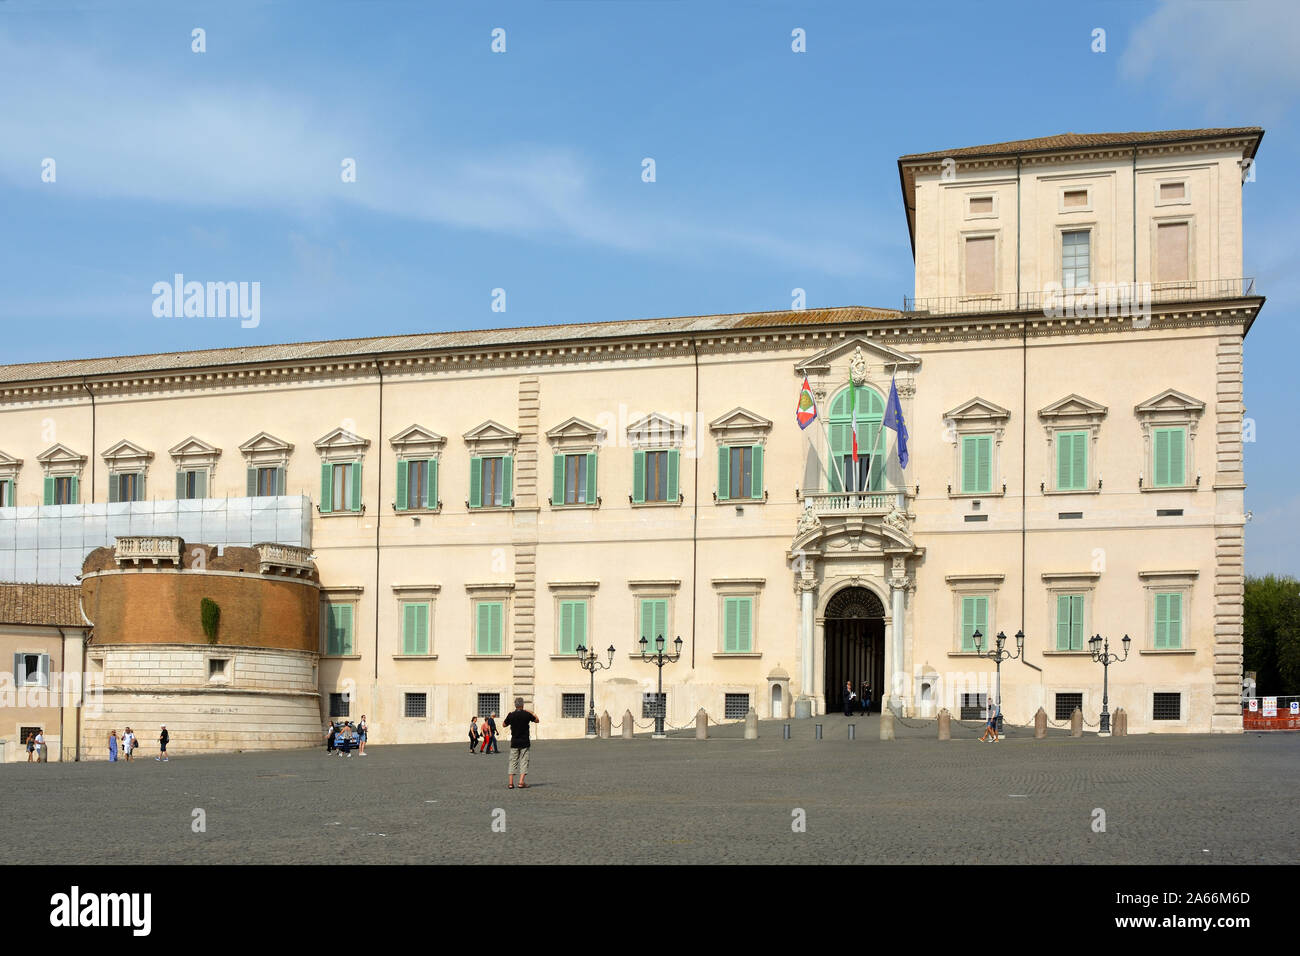 Quirinal Palast an der Piazza del Quirinale in Rom. Residenz des Präsidenten der Italienischen Republik - Italien. Stockfoto